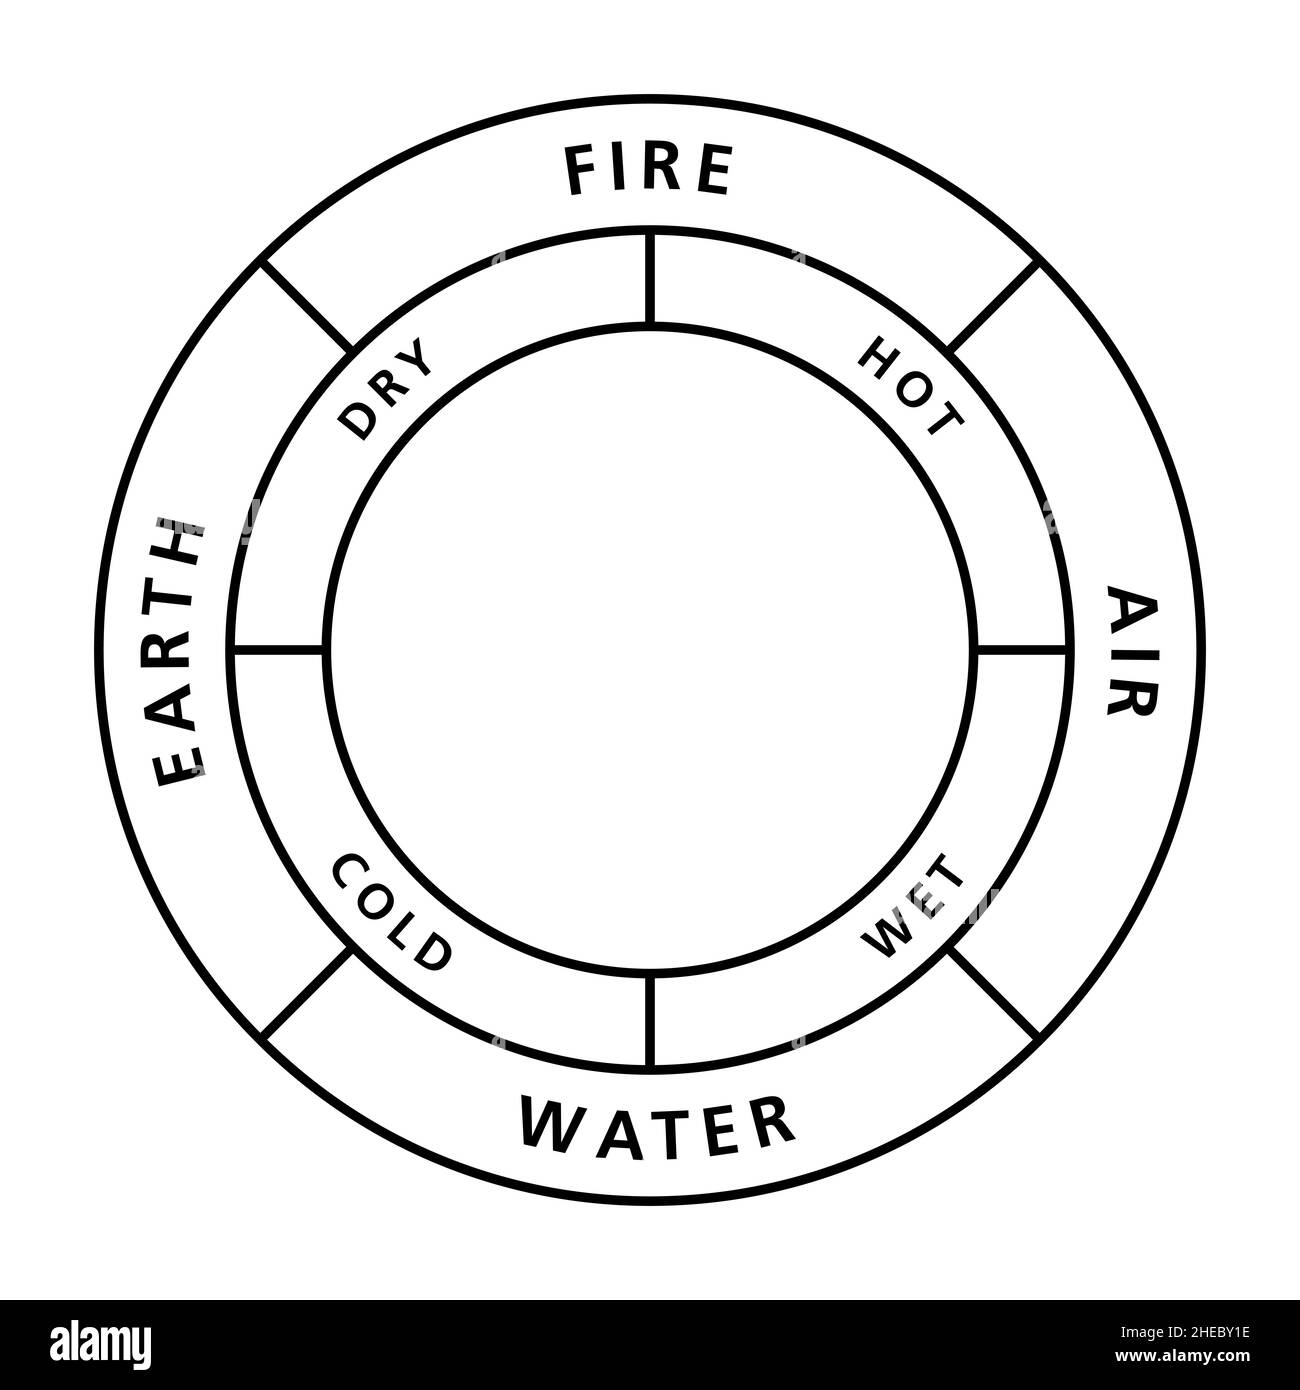 Kreis der klassischen vier Elemente Feuer, Erde, Wasser und Luft, mit ihren Qualitäten heiß, trocken, kalt und nass. Stockfoto